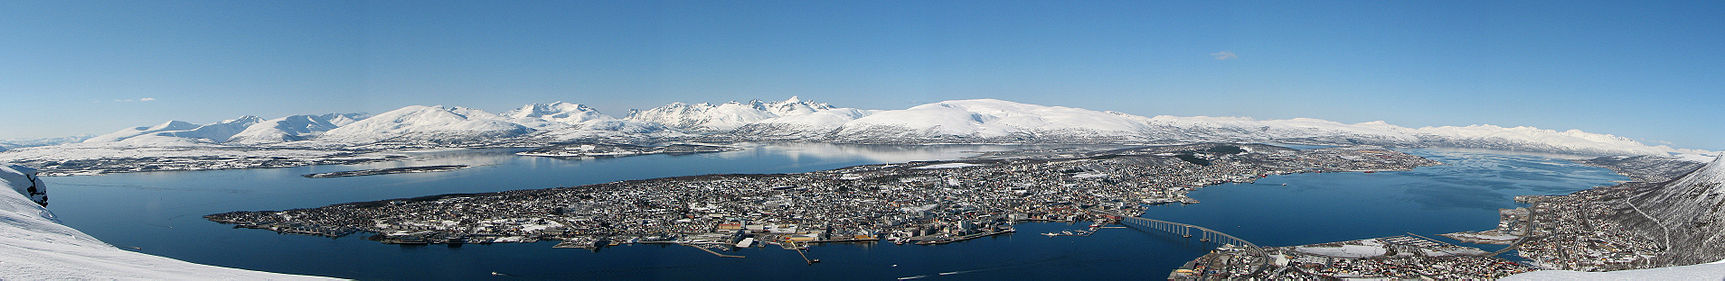 Panorama udsigt over Tromsø fra Fløya (Fjellheisen). Længst til venstre er hovedlandet, til venstre længst bagude er øen Senja. Hele midtersektionen bag Tromsøya er øen Kvaløya.